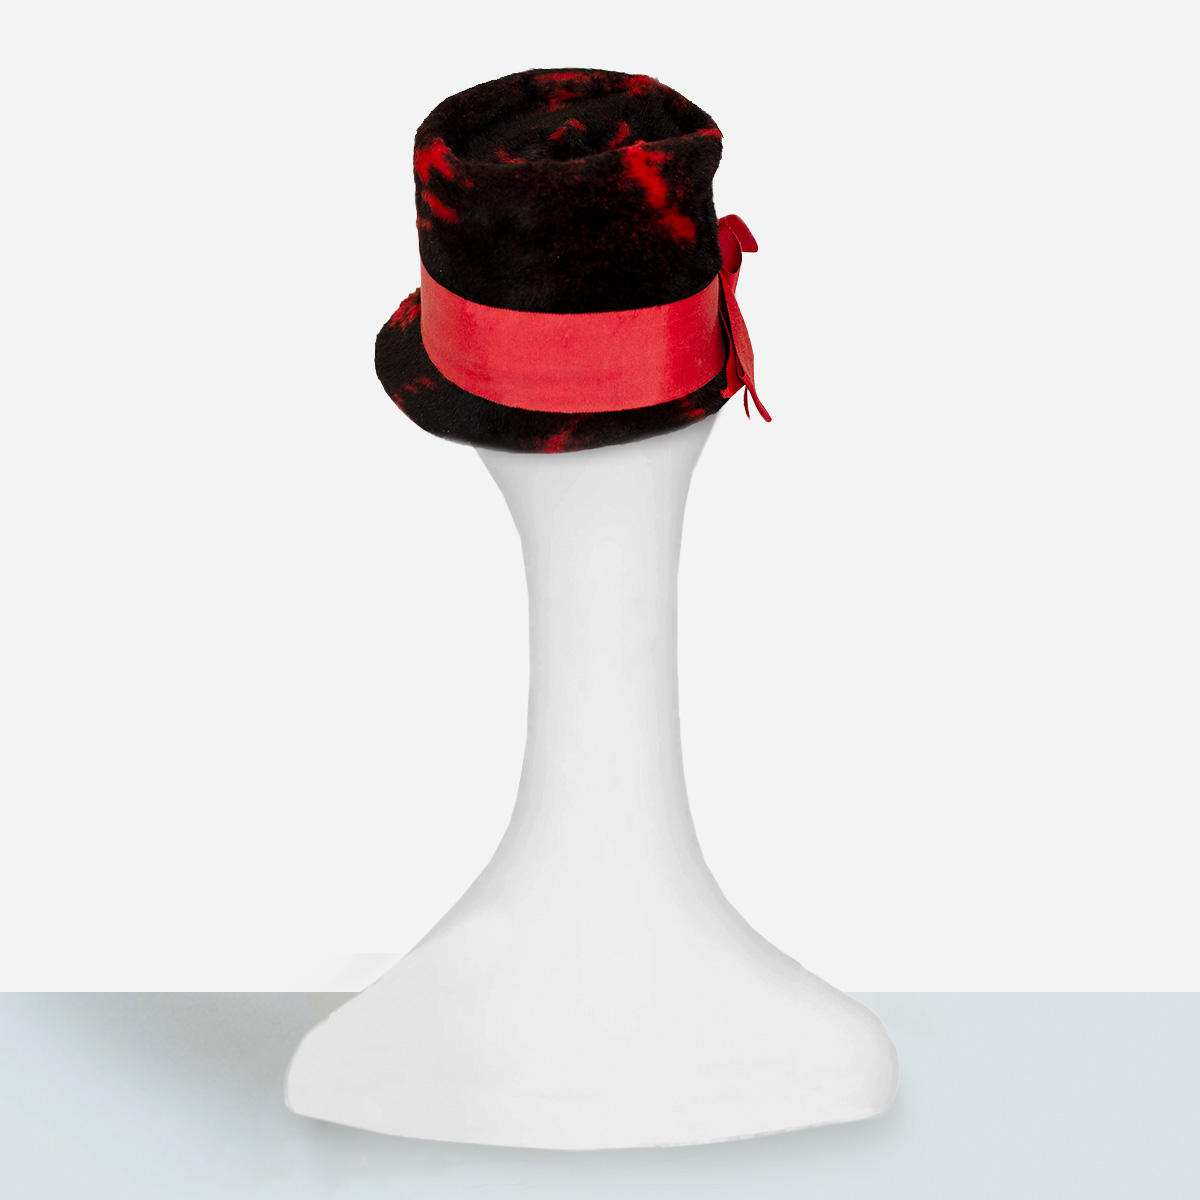 Vintage red hat